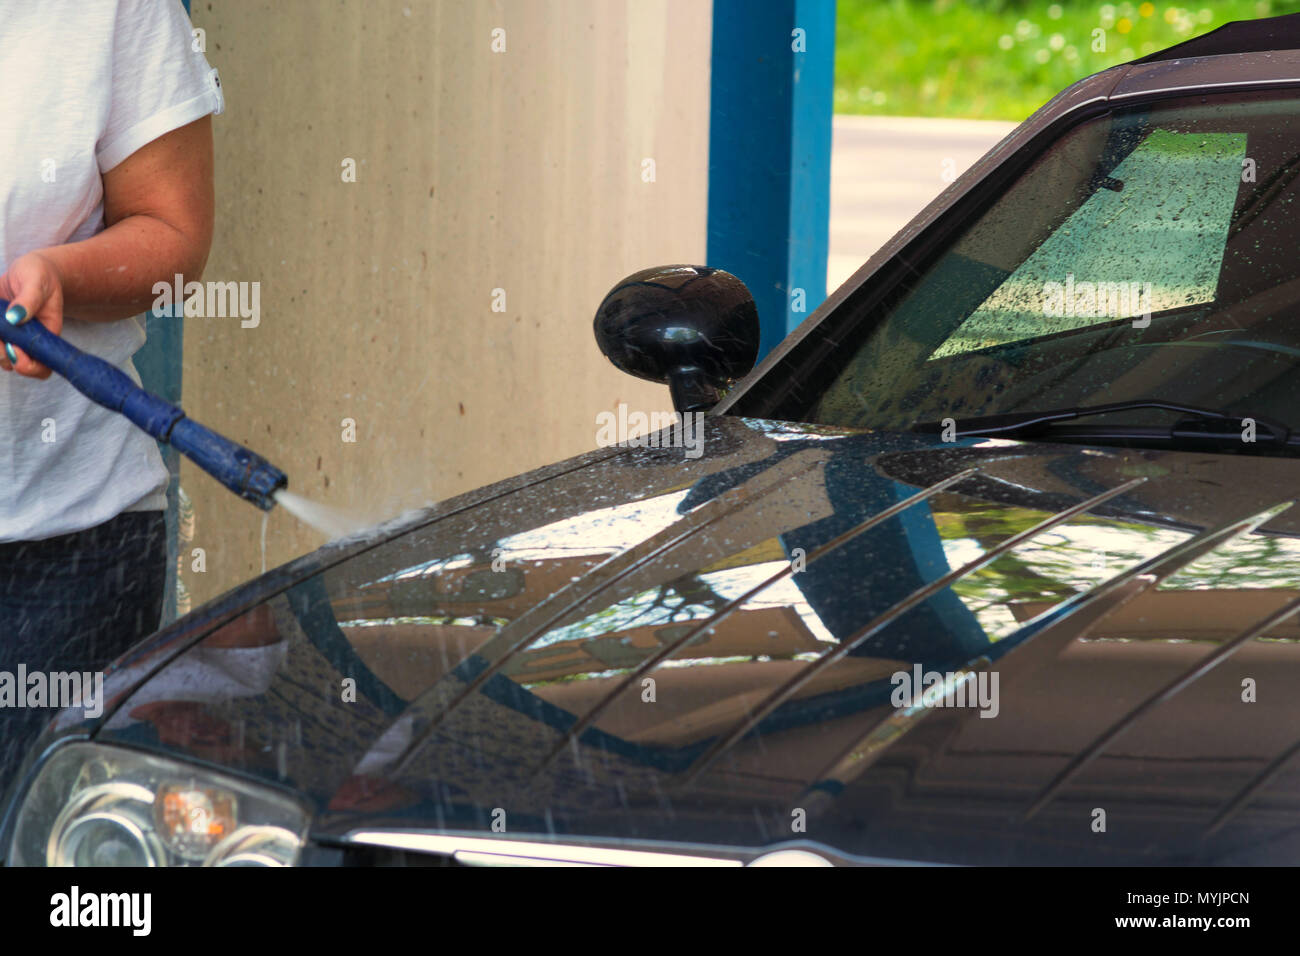 Auto sauber machen Mit einem Hochdruckreiniger. Foto Stock